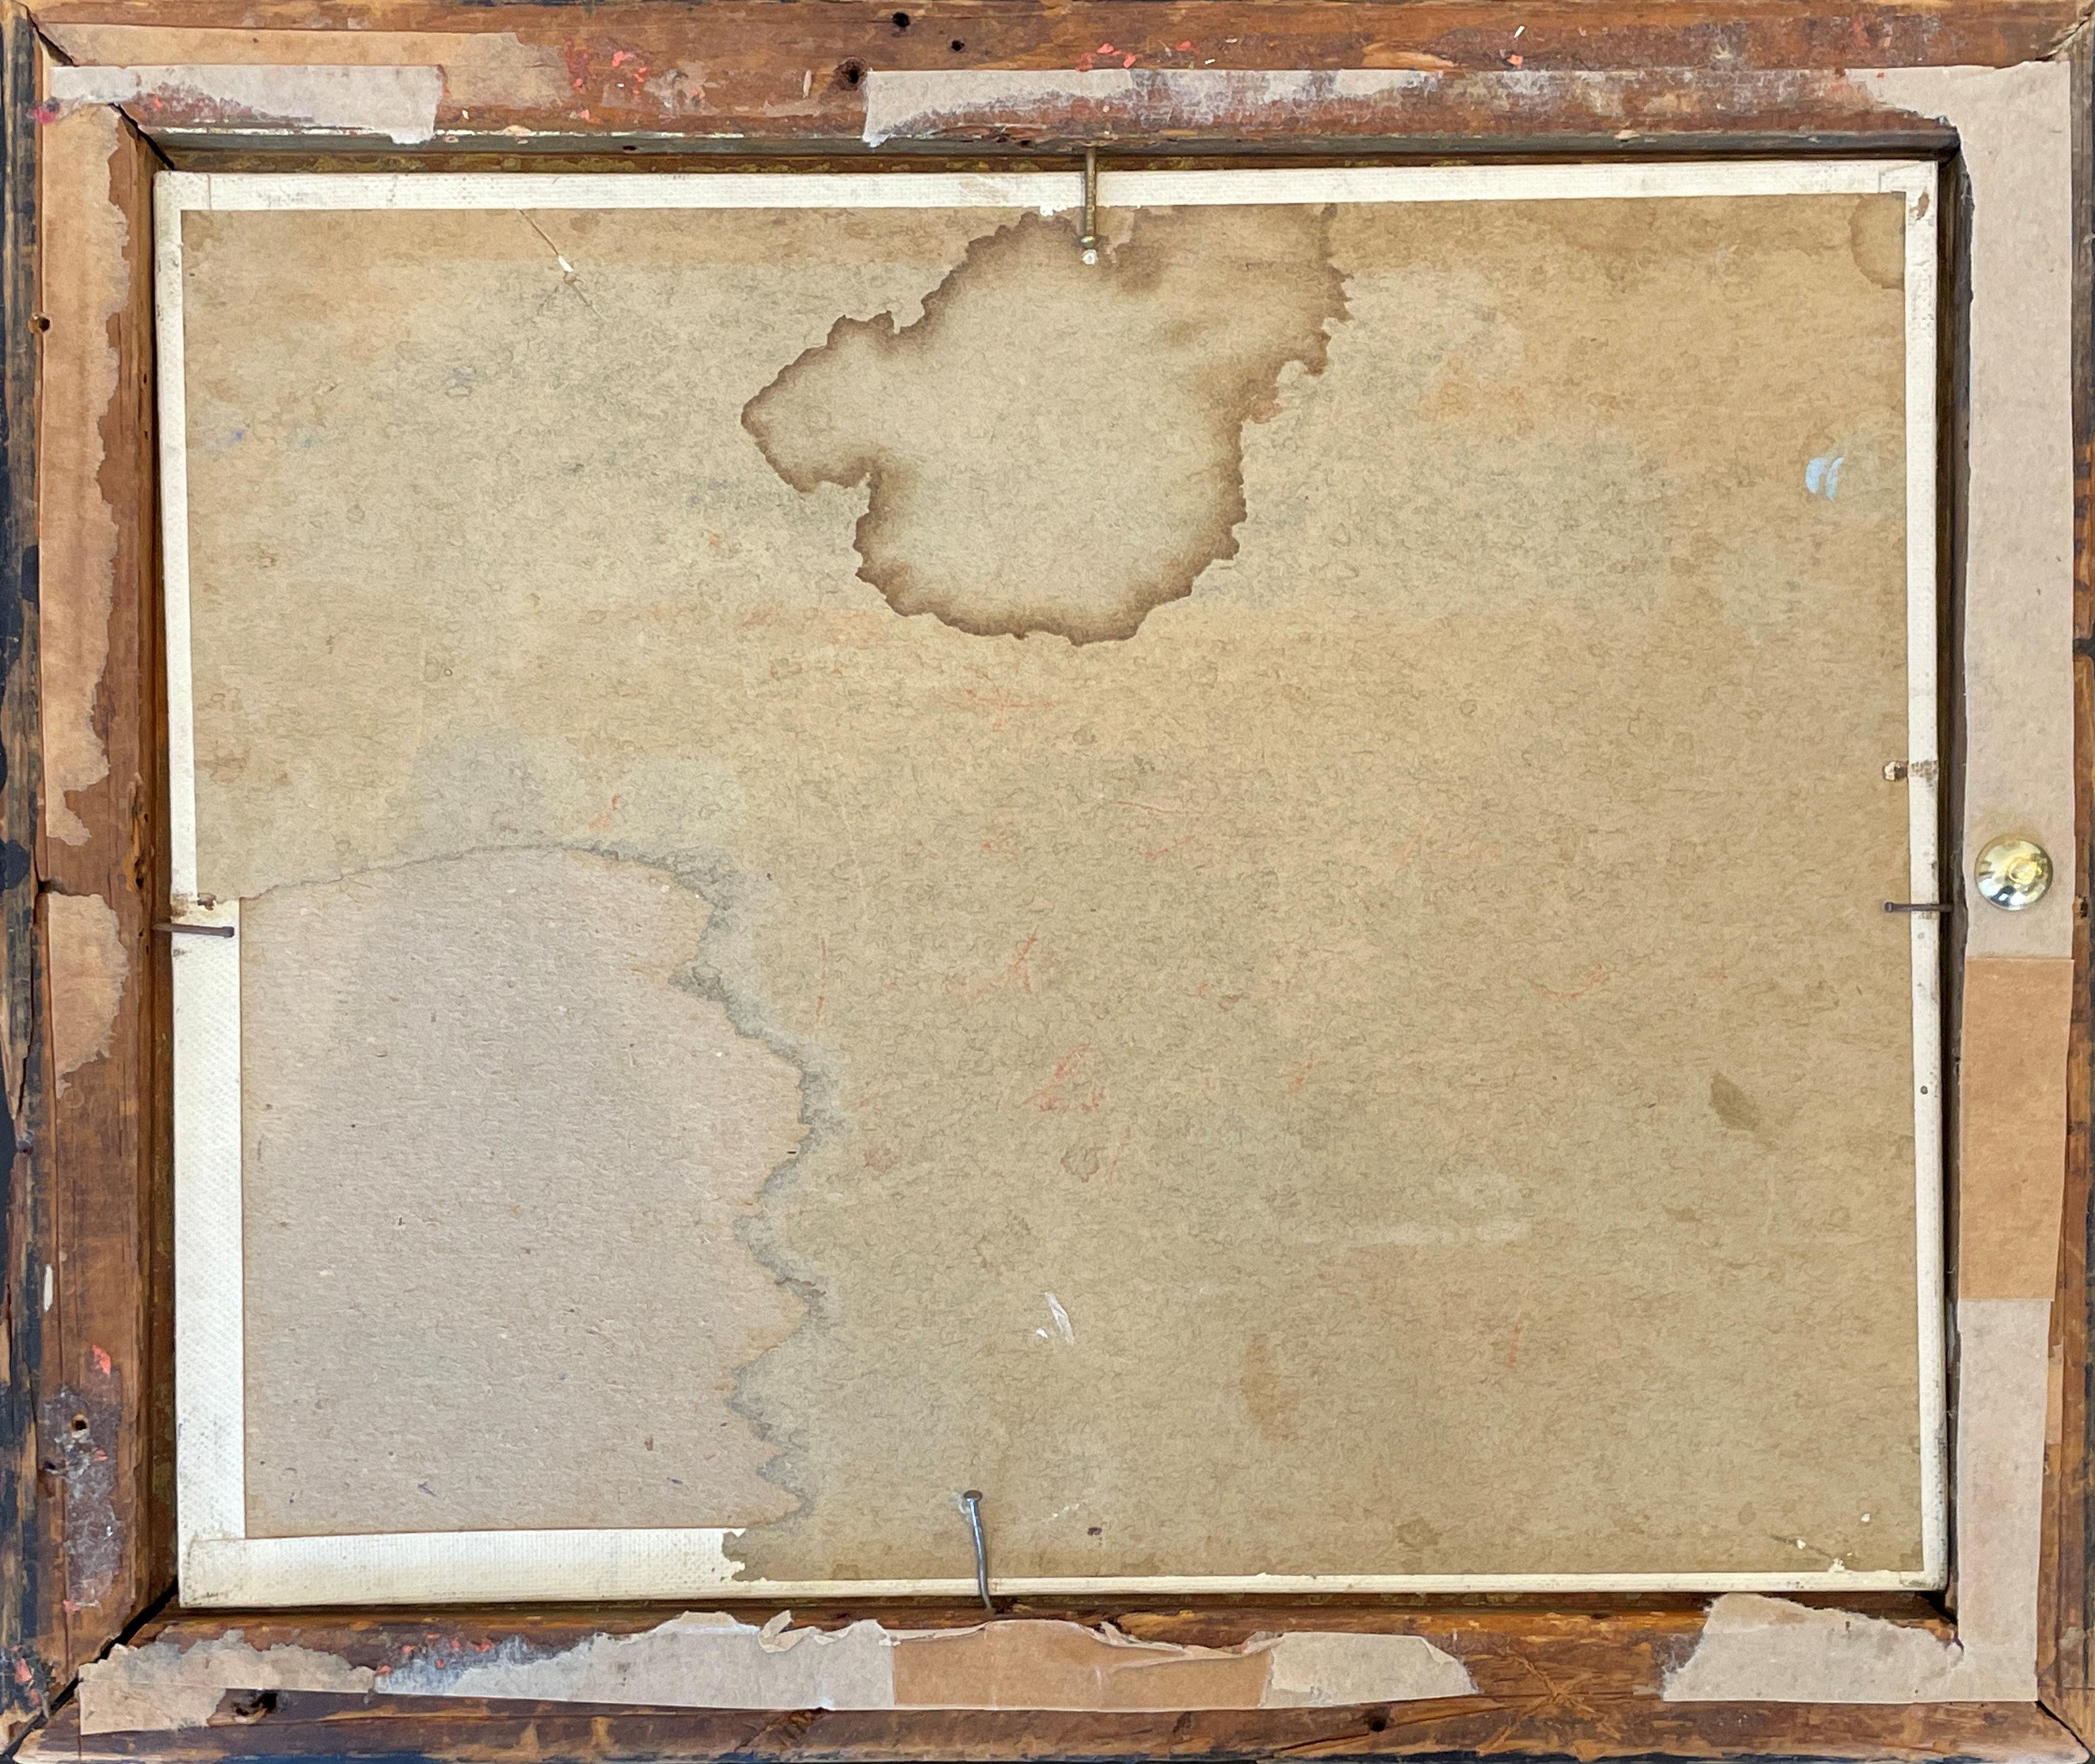 Orrin White
Paysage de montagne de Californie
Signé en bas à droite
Huile sur carton
8 x 10 pouces

Peintre paysagiste de renommée nationale, qui a passé la majeure partie de sa carrière en Californie, Orrin White est né à Hanover, dans l'Illinois. 